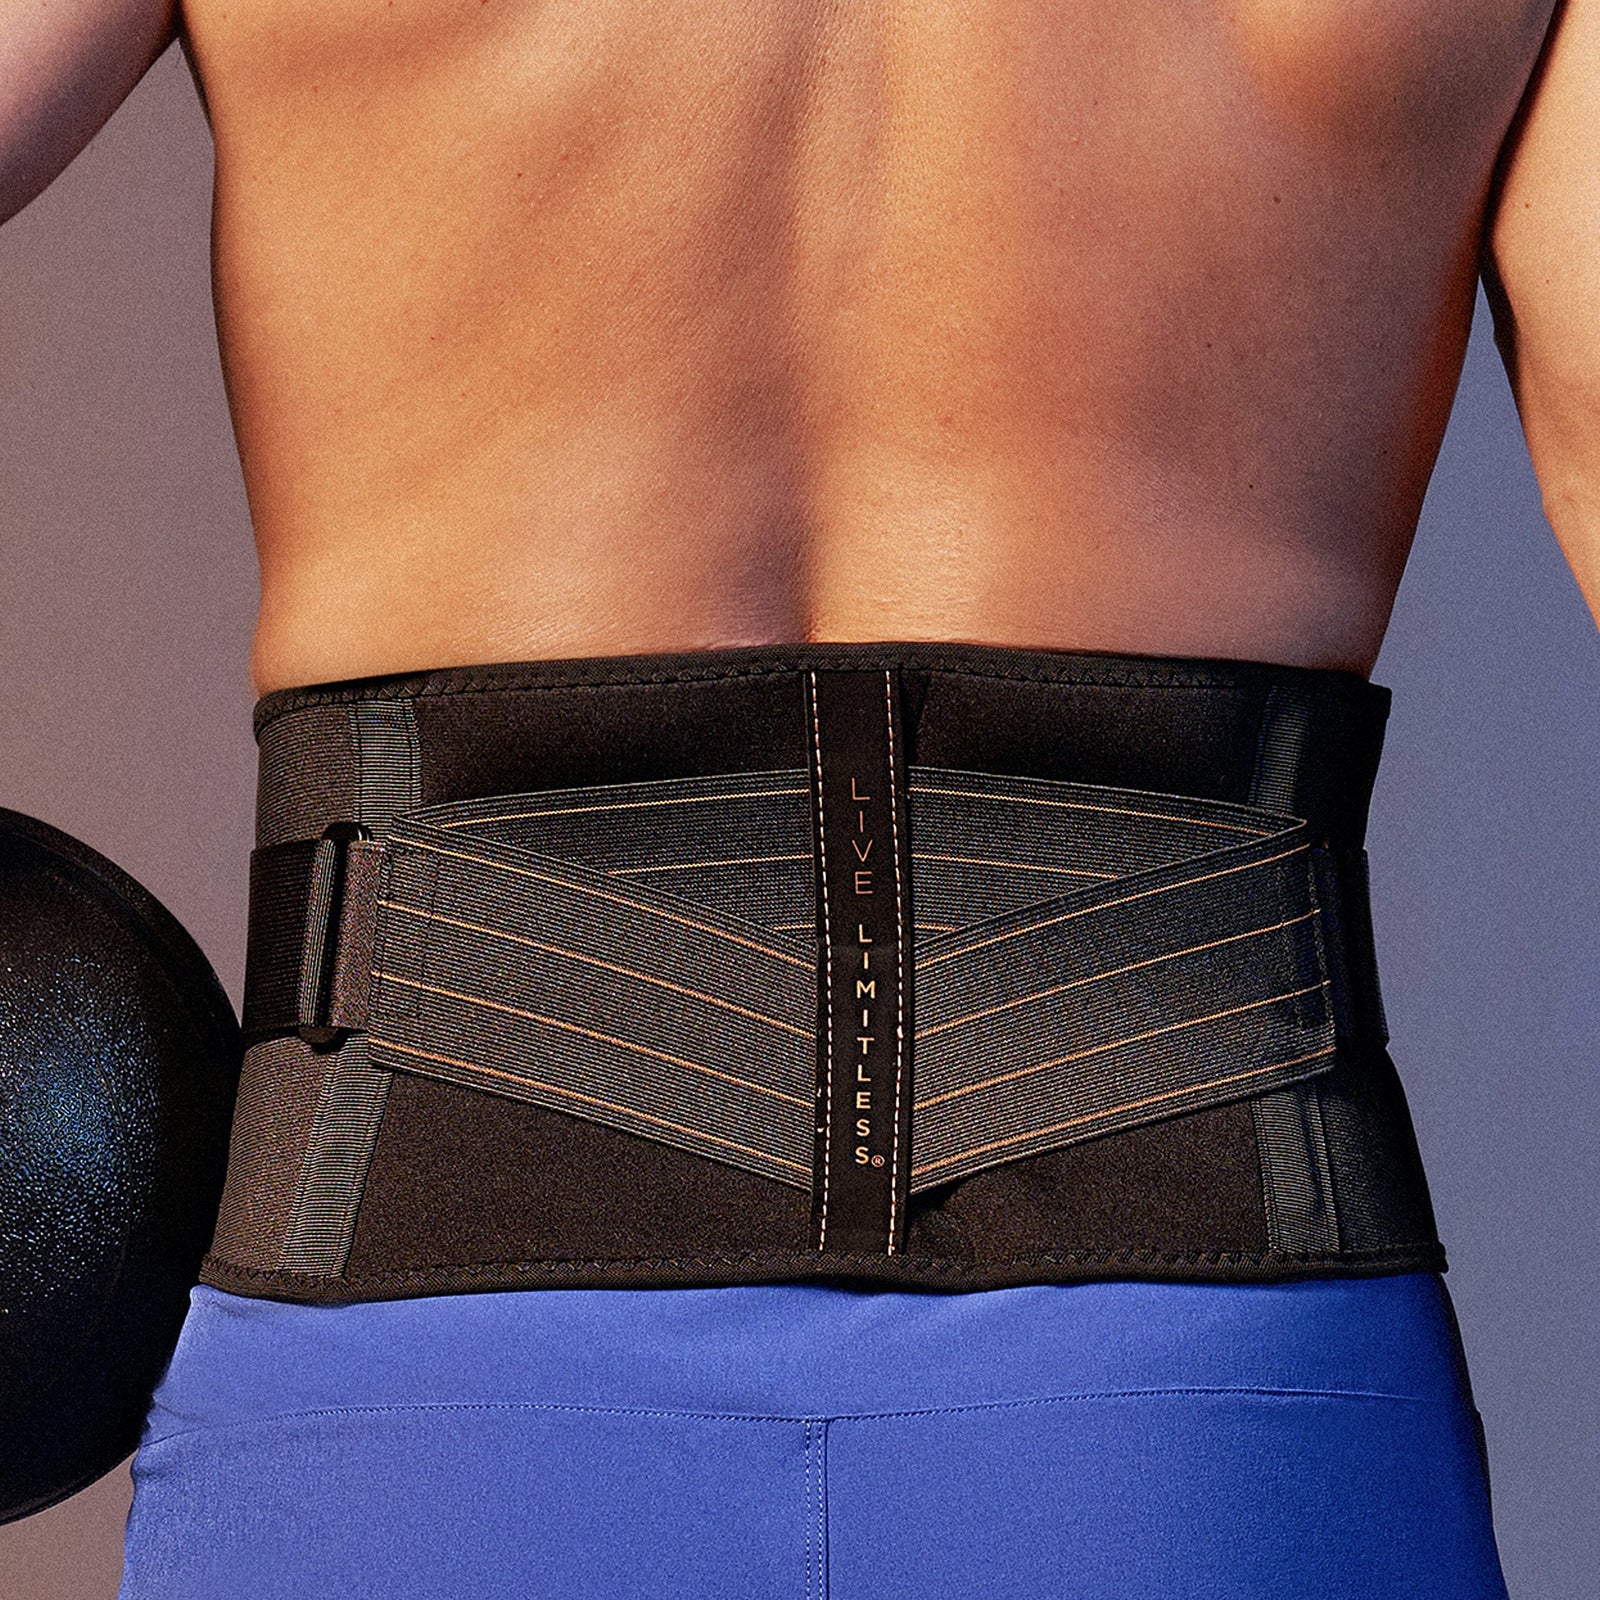 Double Shoulder Brace Adjustable Sports Shoulder Support Belt Back